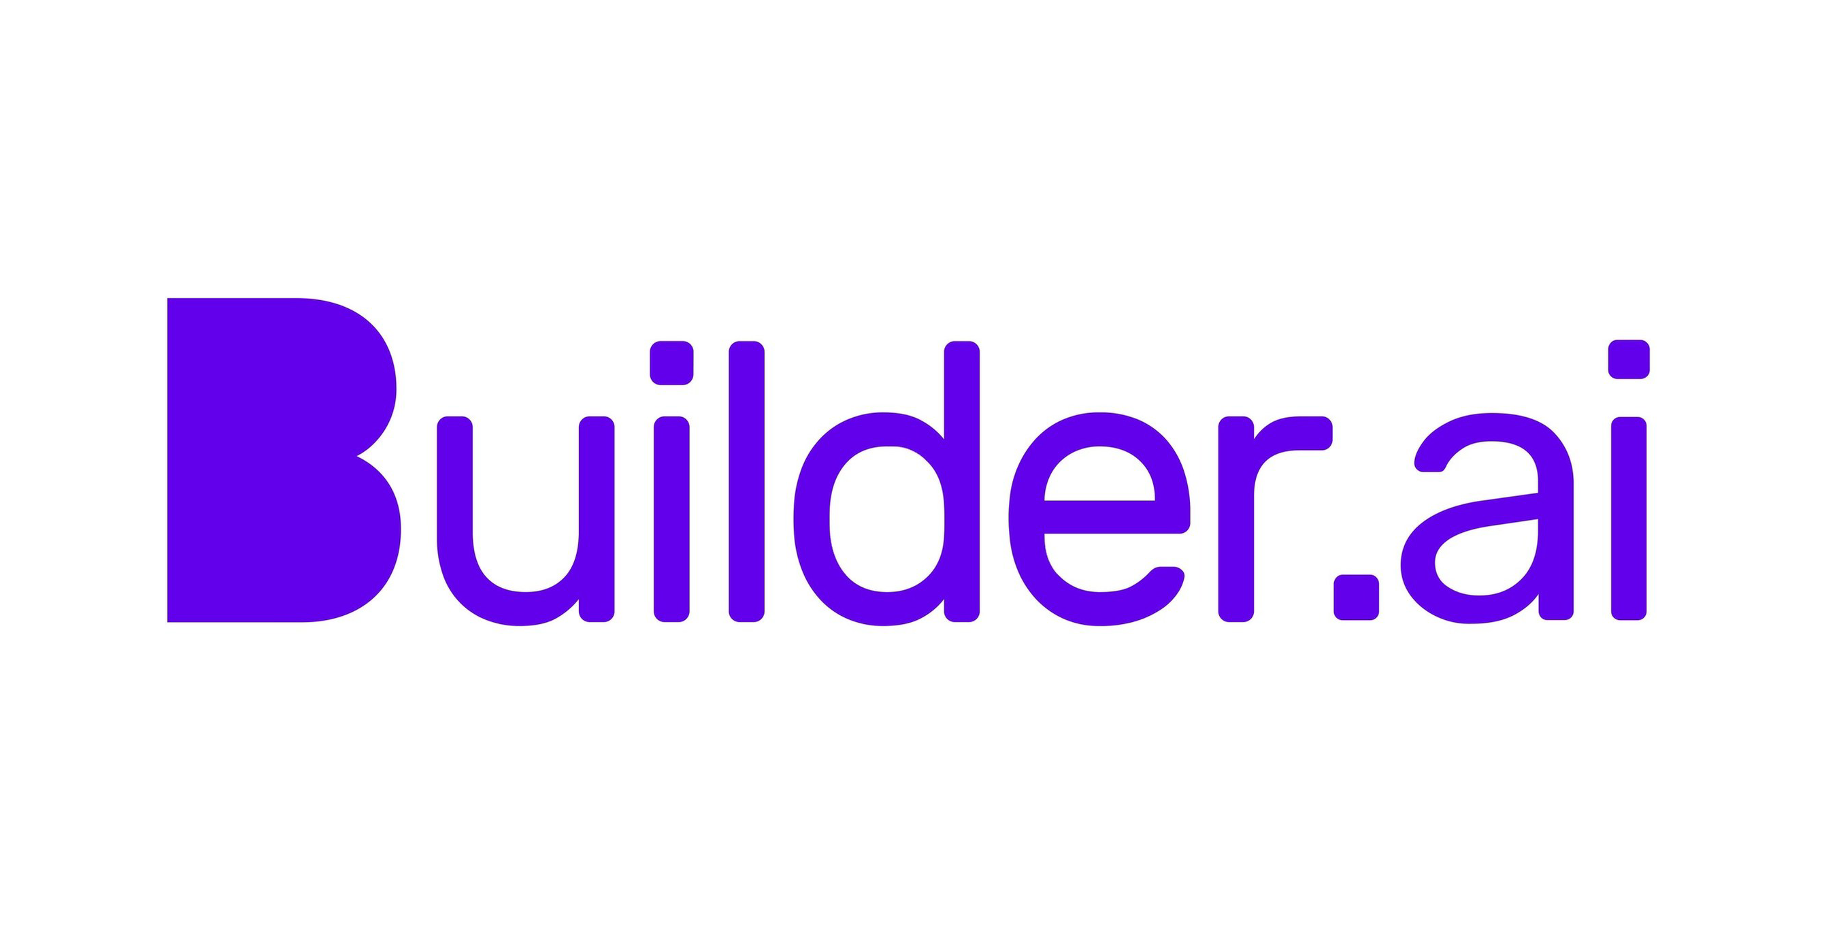 Builder.ai